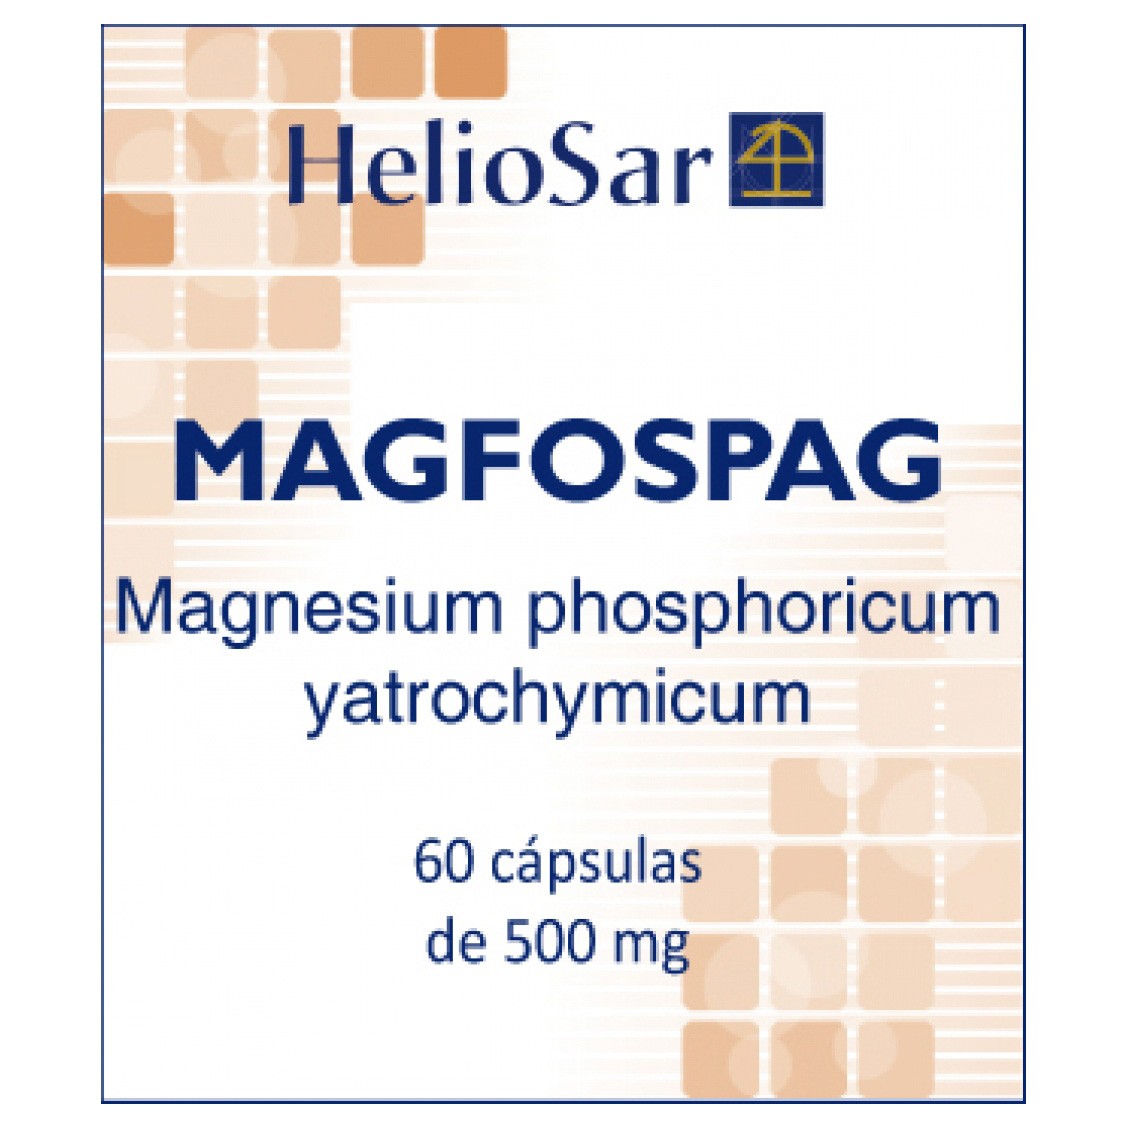 Imagen de Magfospag 60 capsulas heliosar